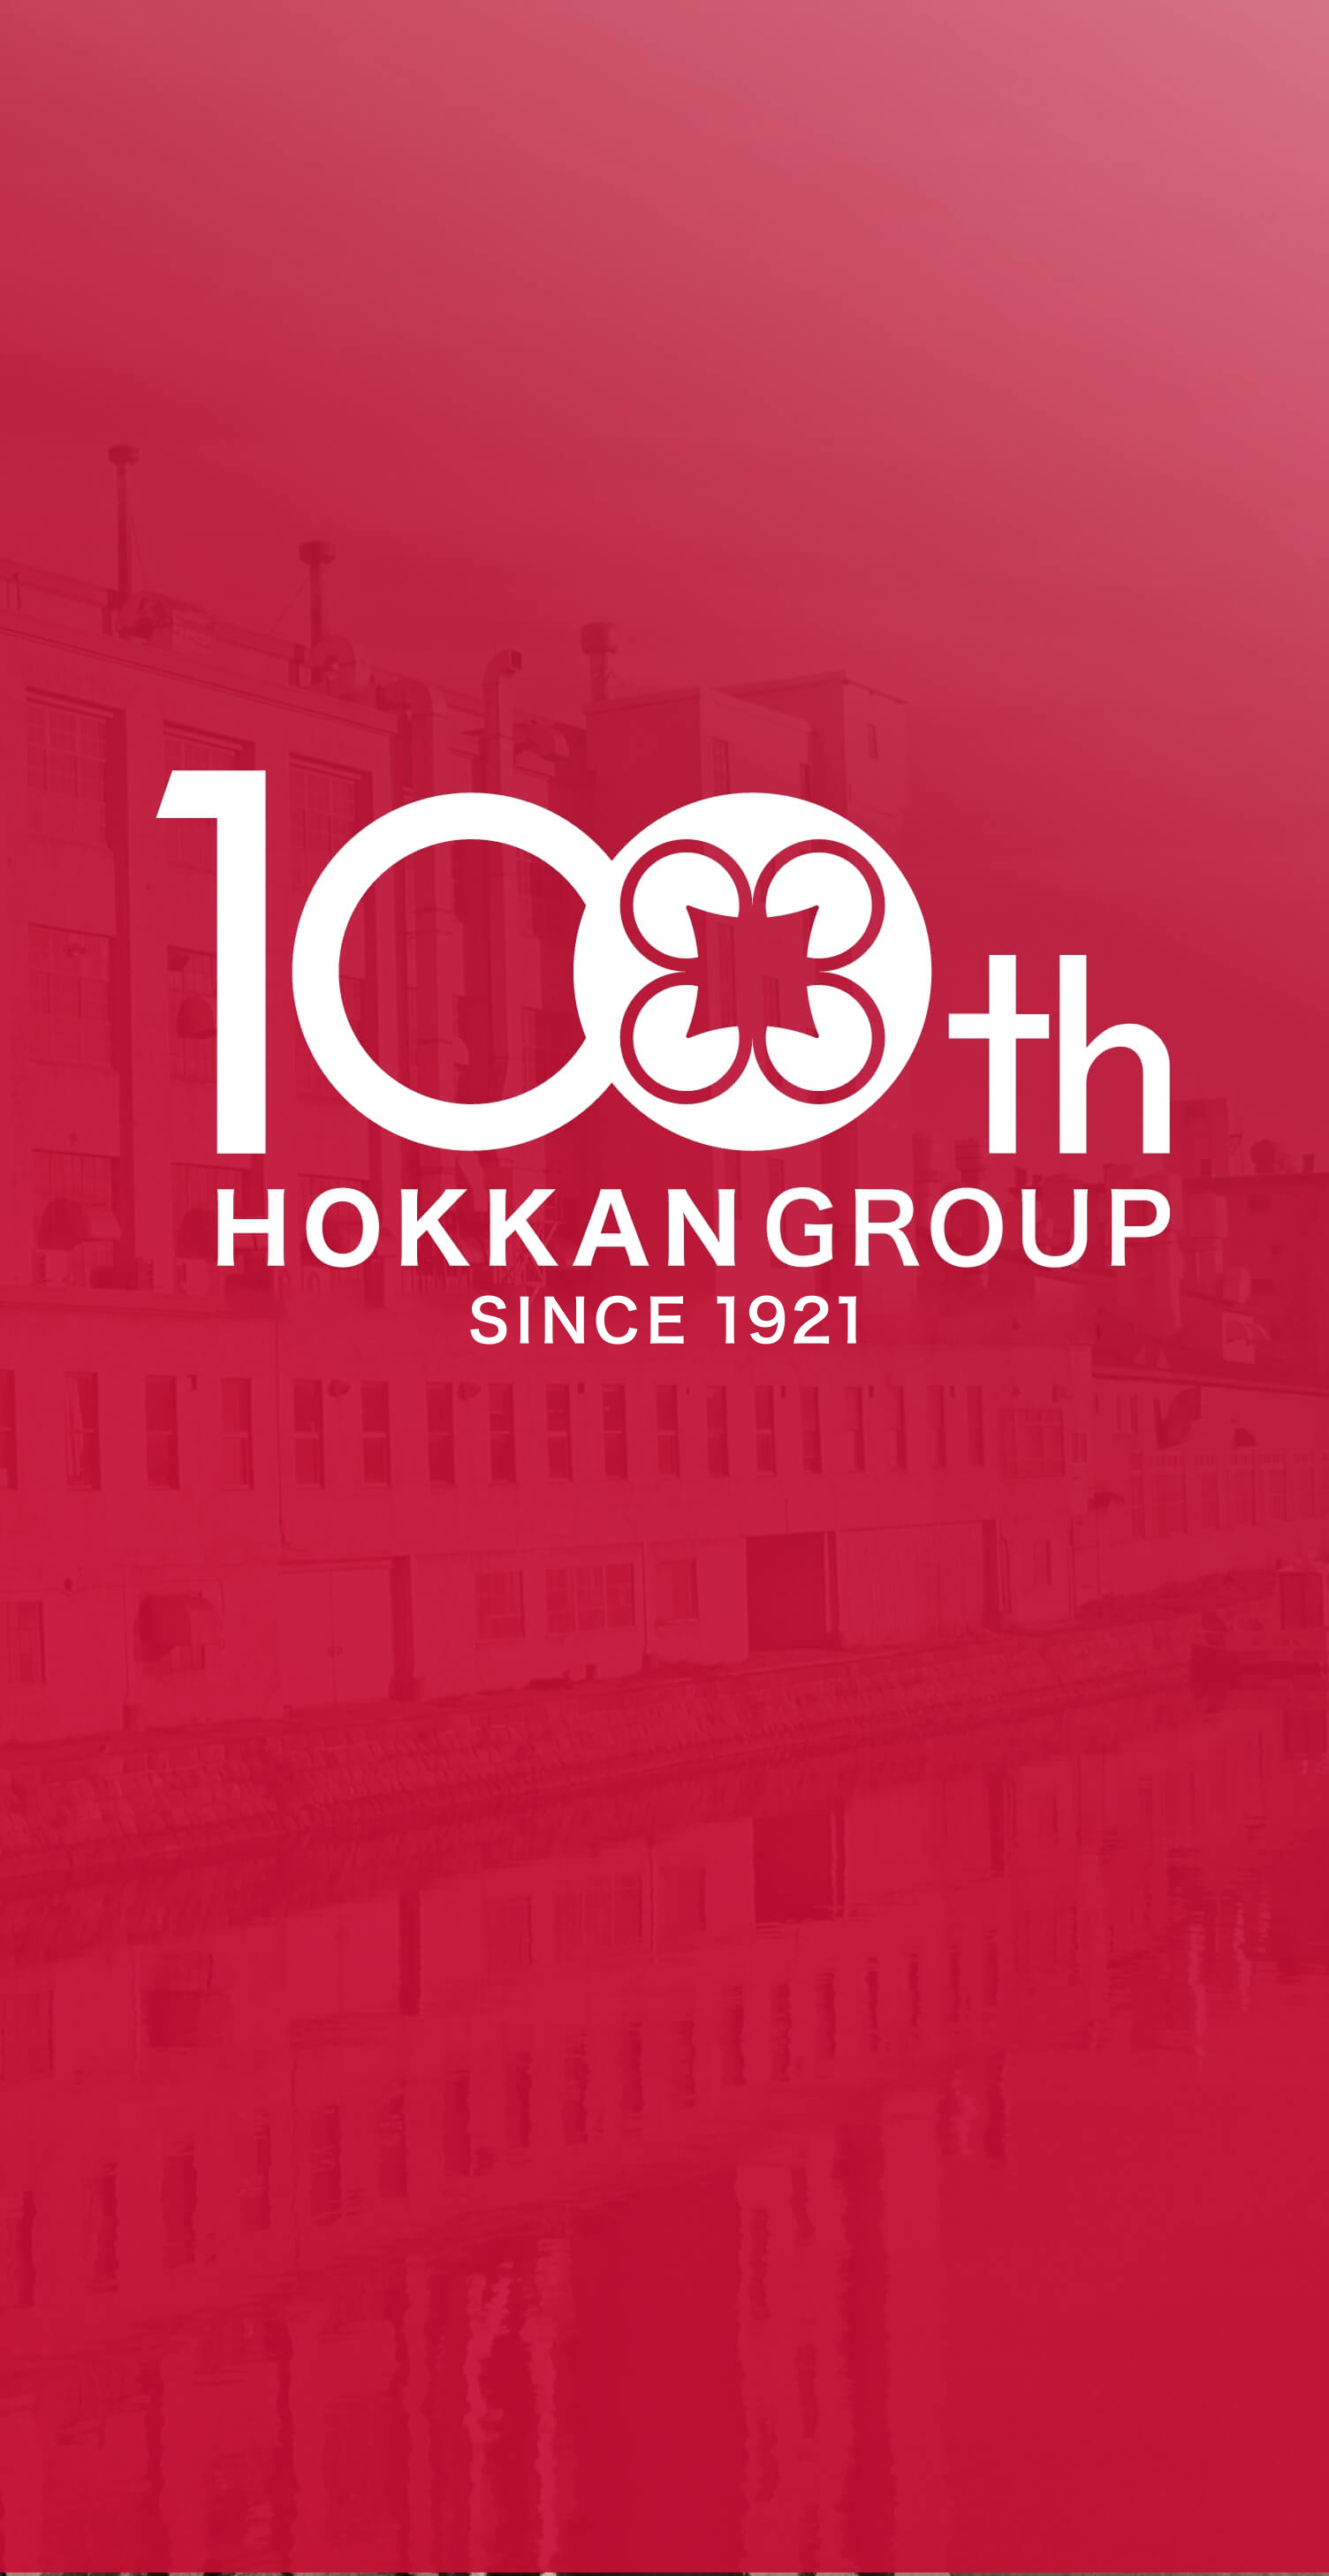 私たちホッカングループは、創業100周年を迎えました。